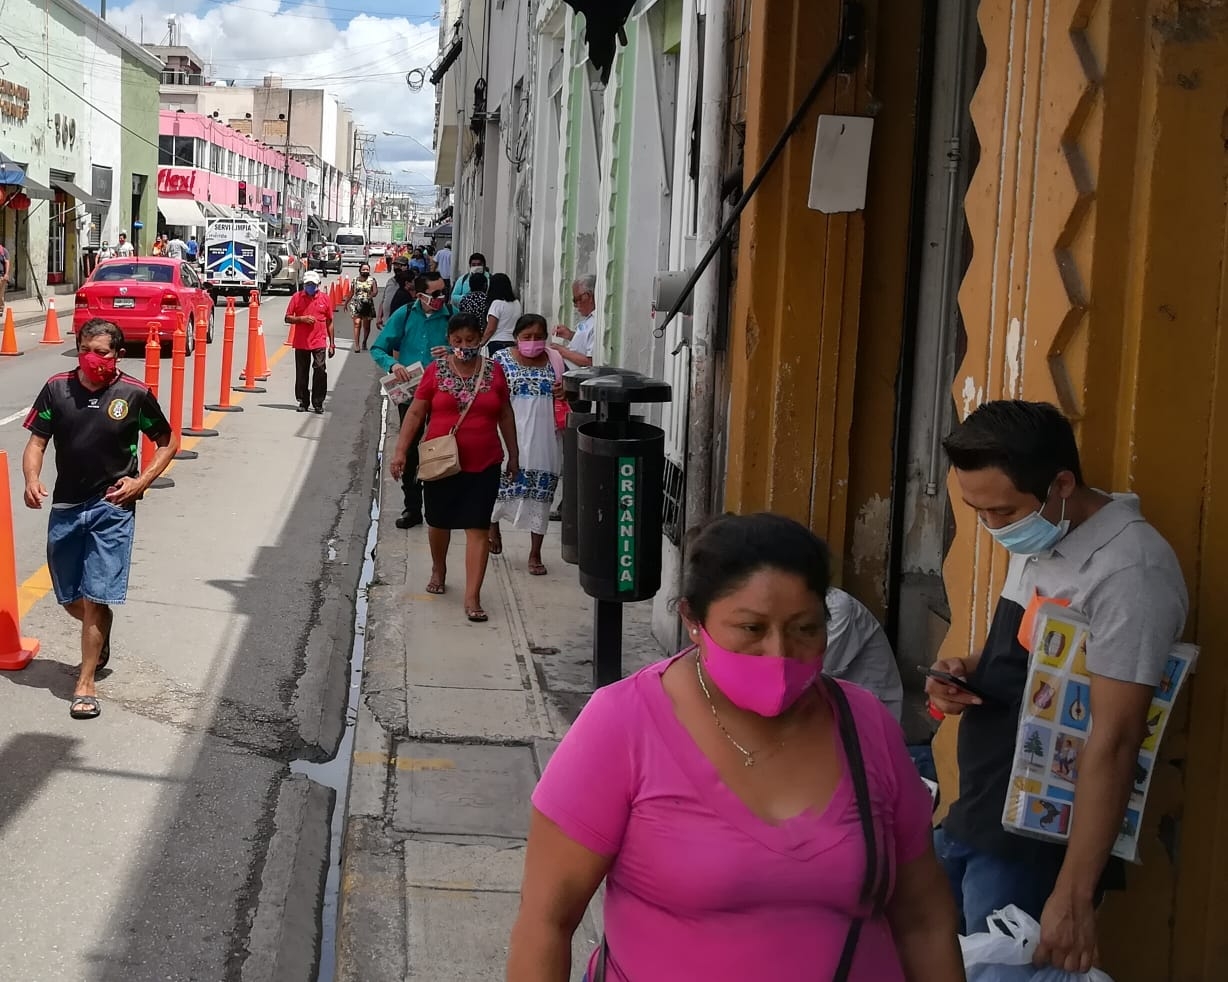 Sube la cifra de casos de COVID-19 en Yucatán este martes; reportan 109 nuevos contagios